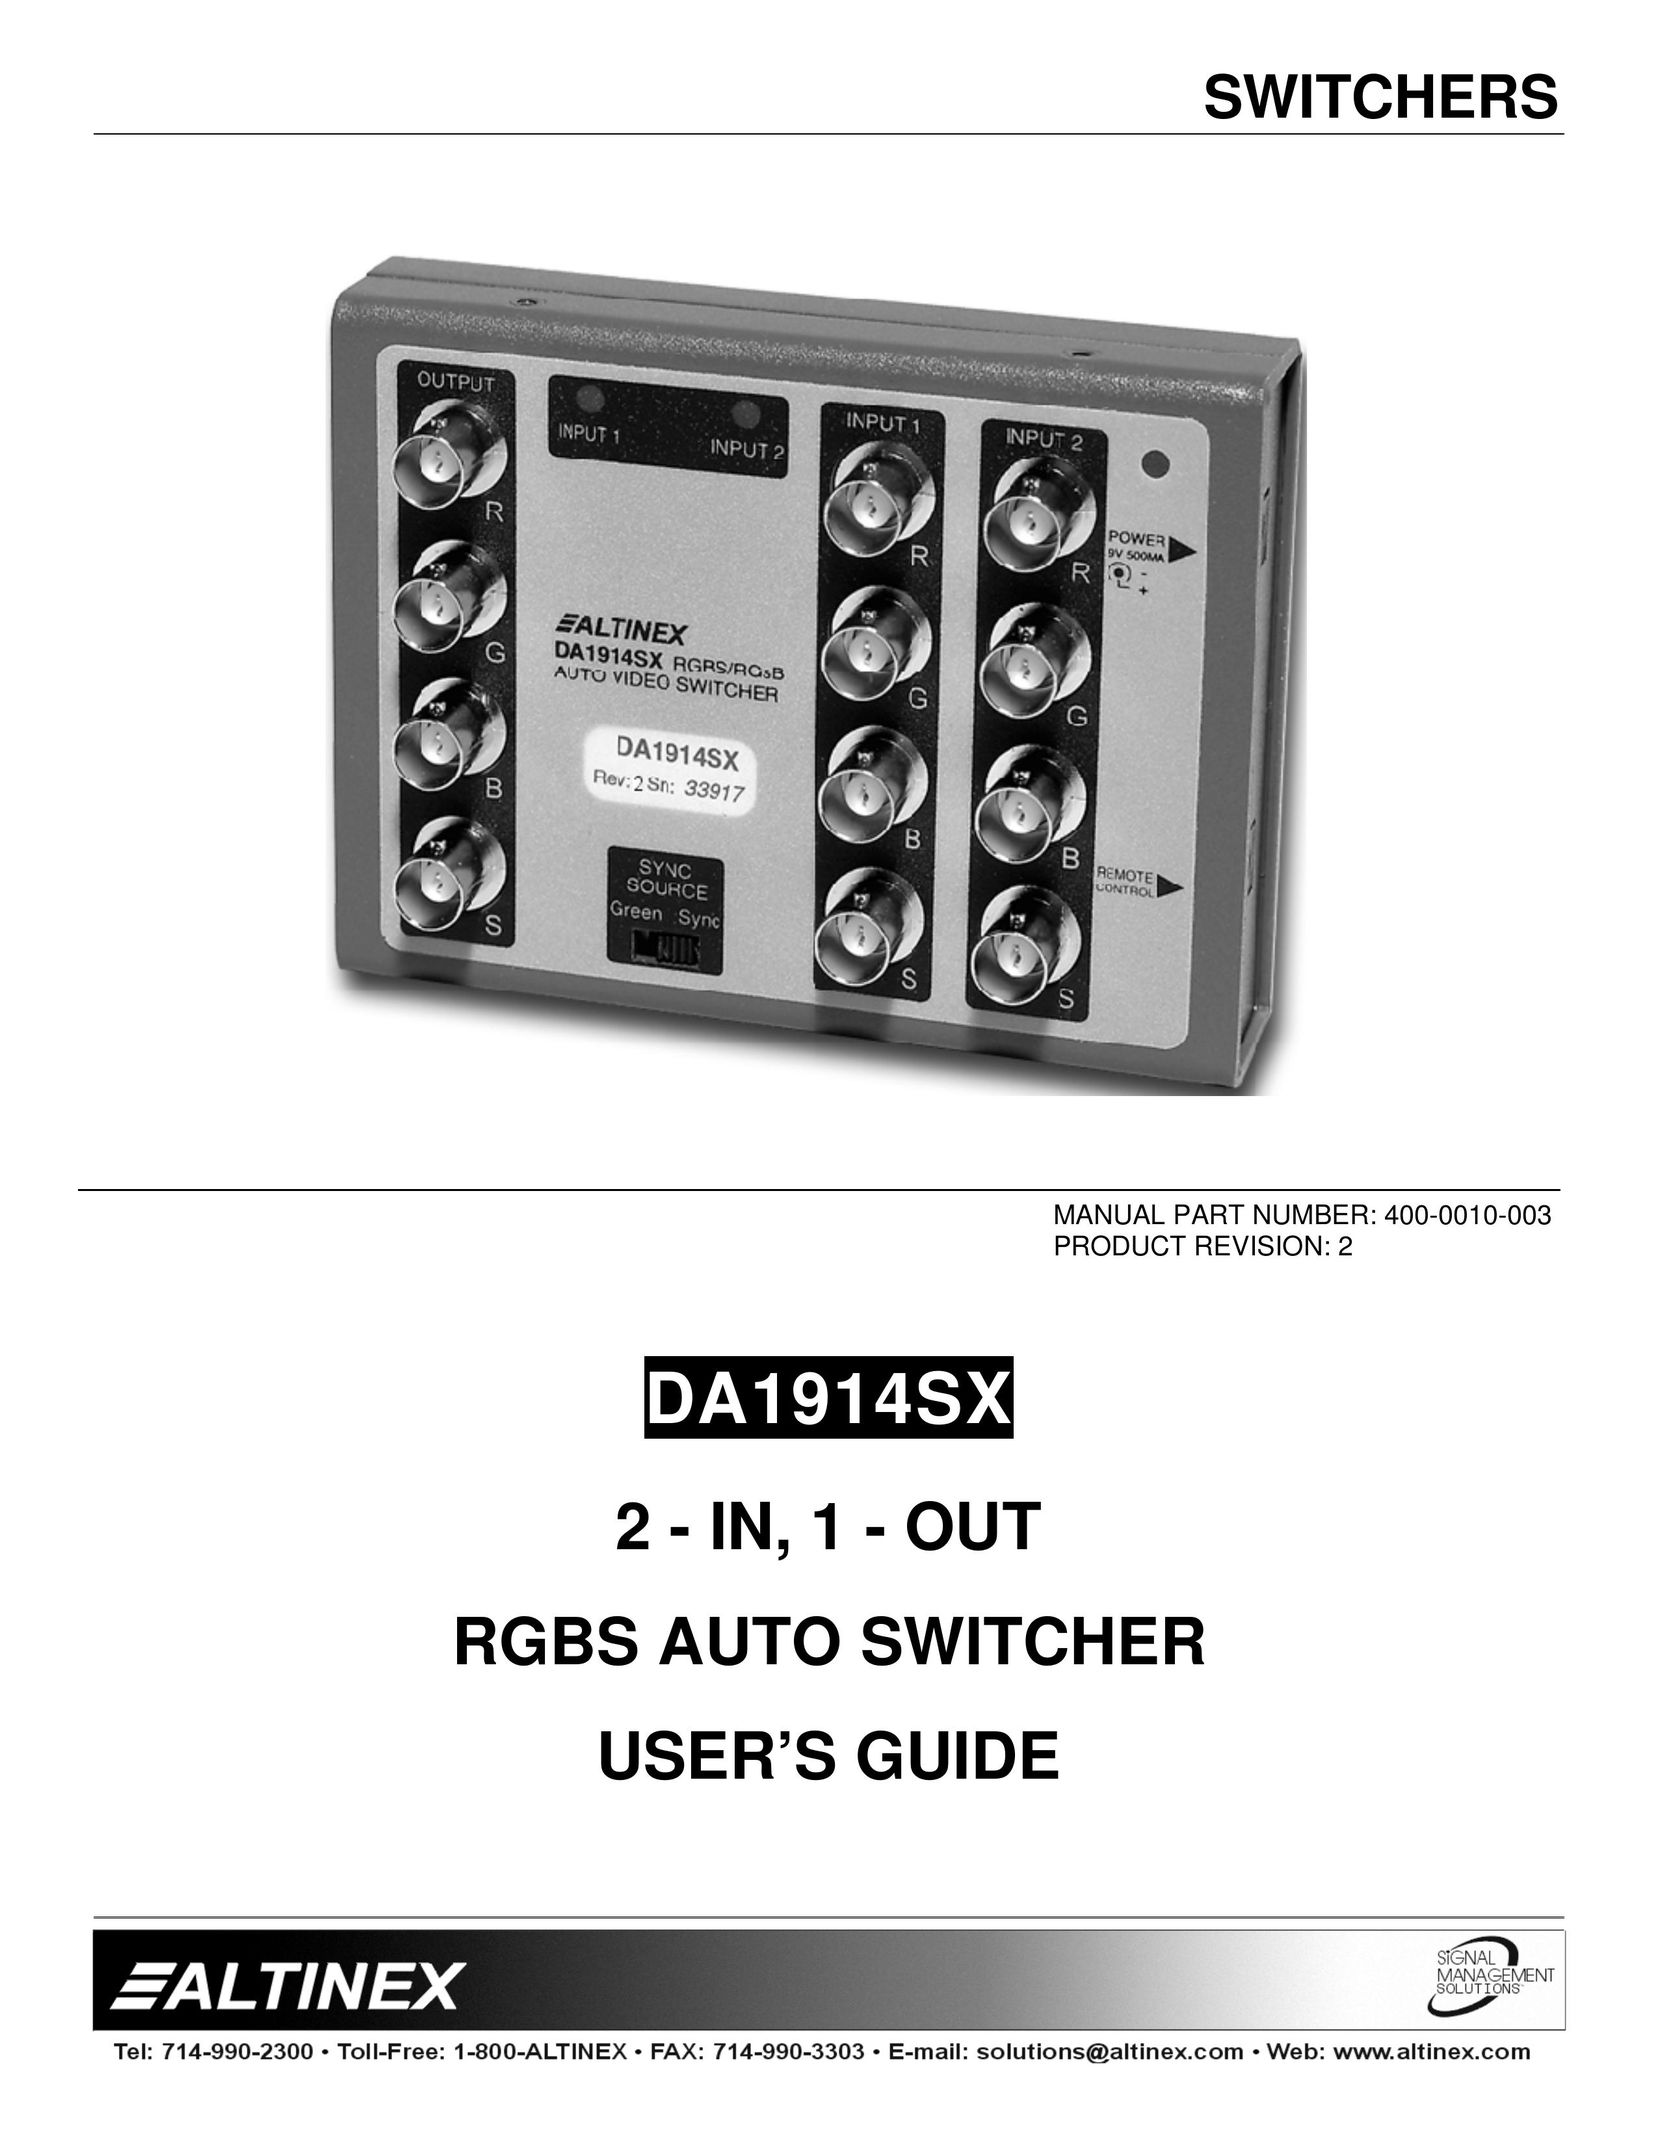 Altinex DA1914SX Switch User Manual